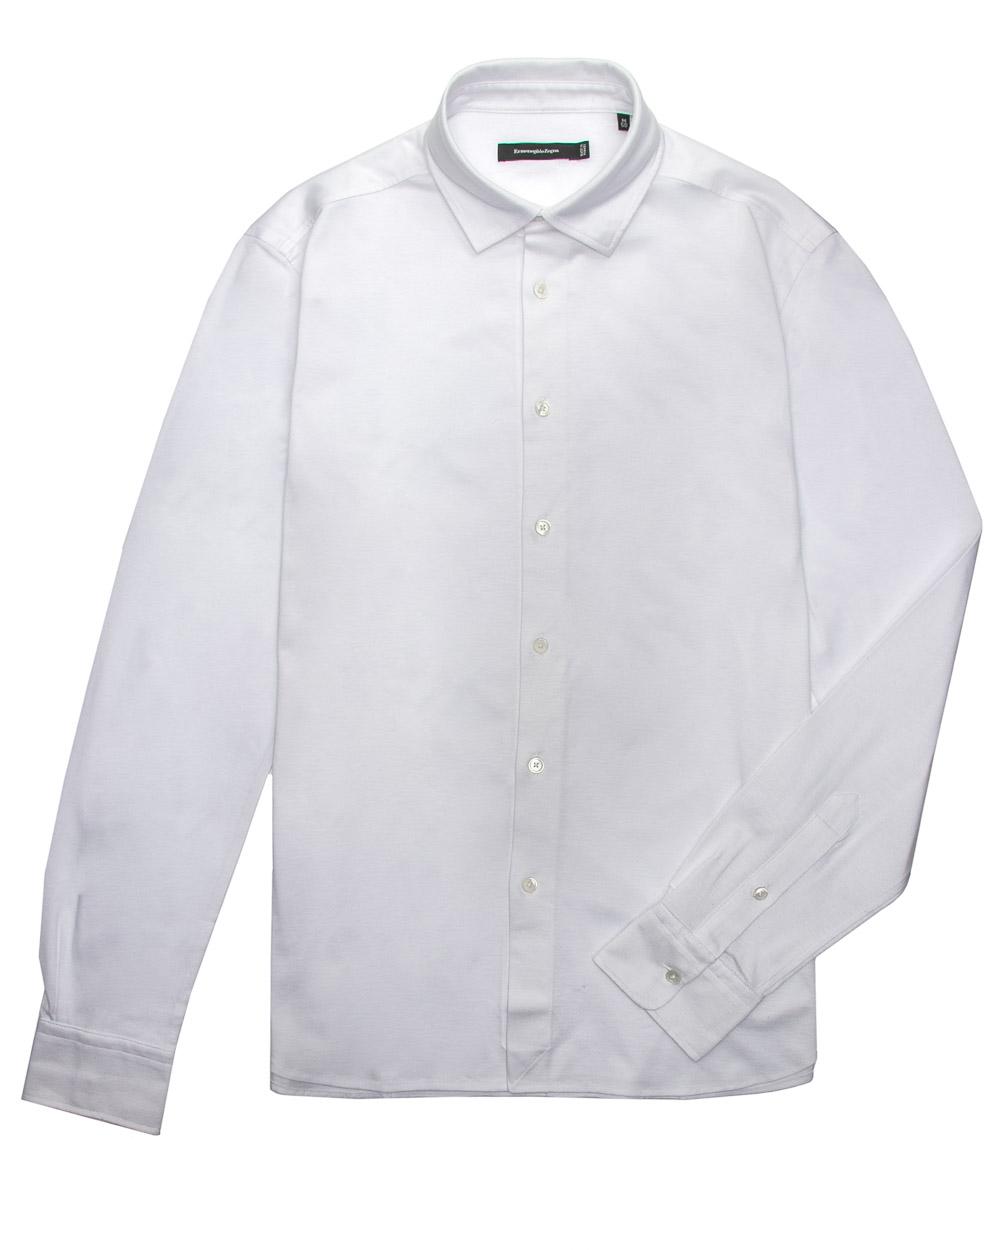 Ermenegildo Zegna White Jersey Knit Shirt 56 Itl in Black for Men - Lyst